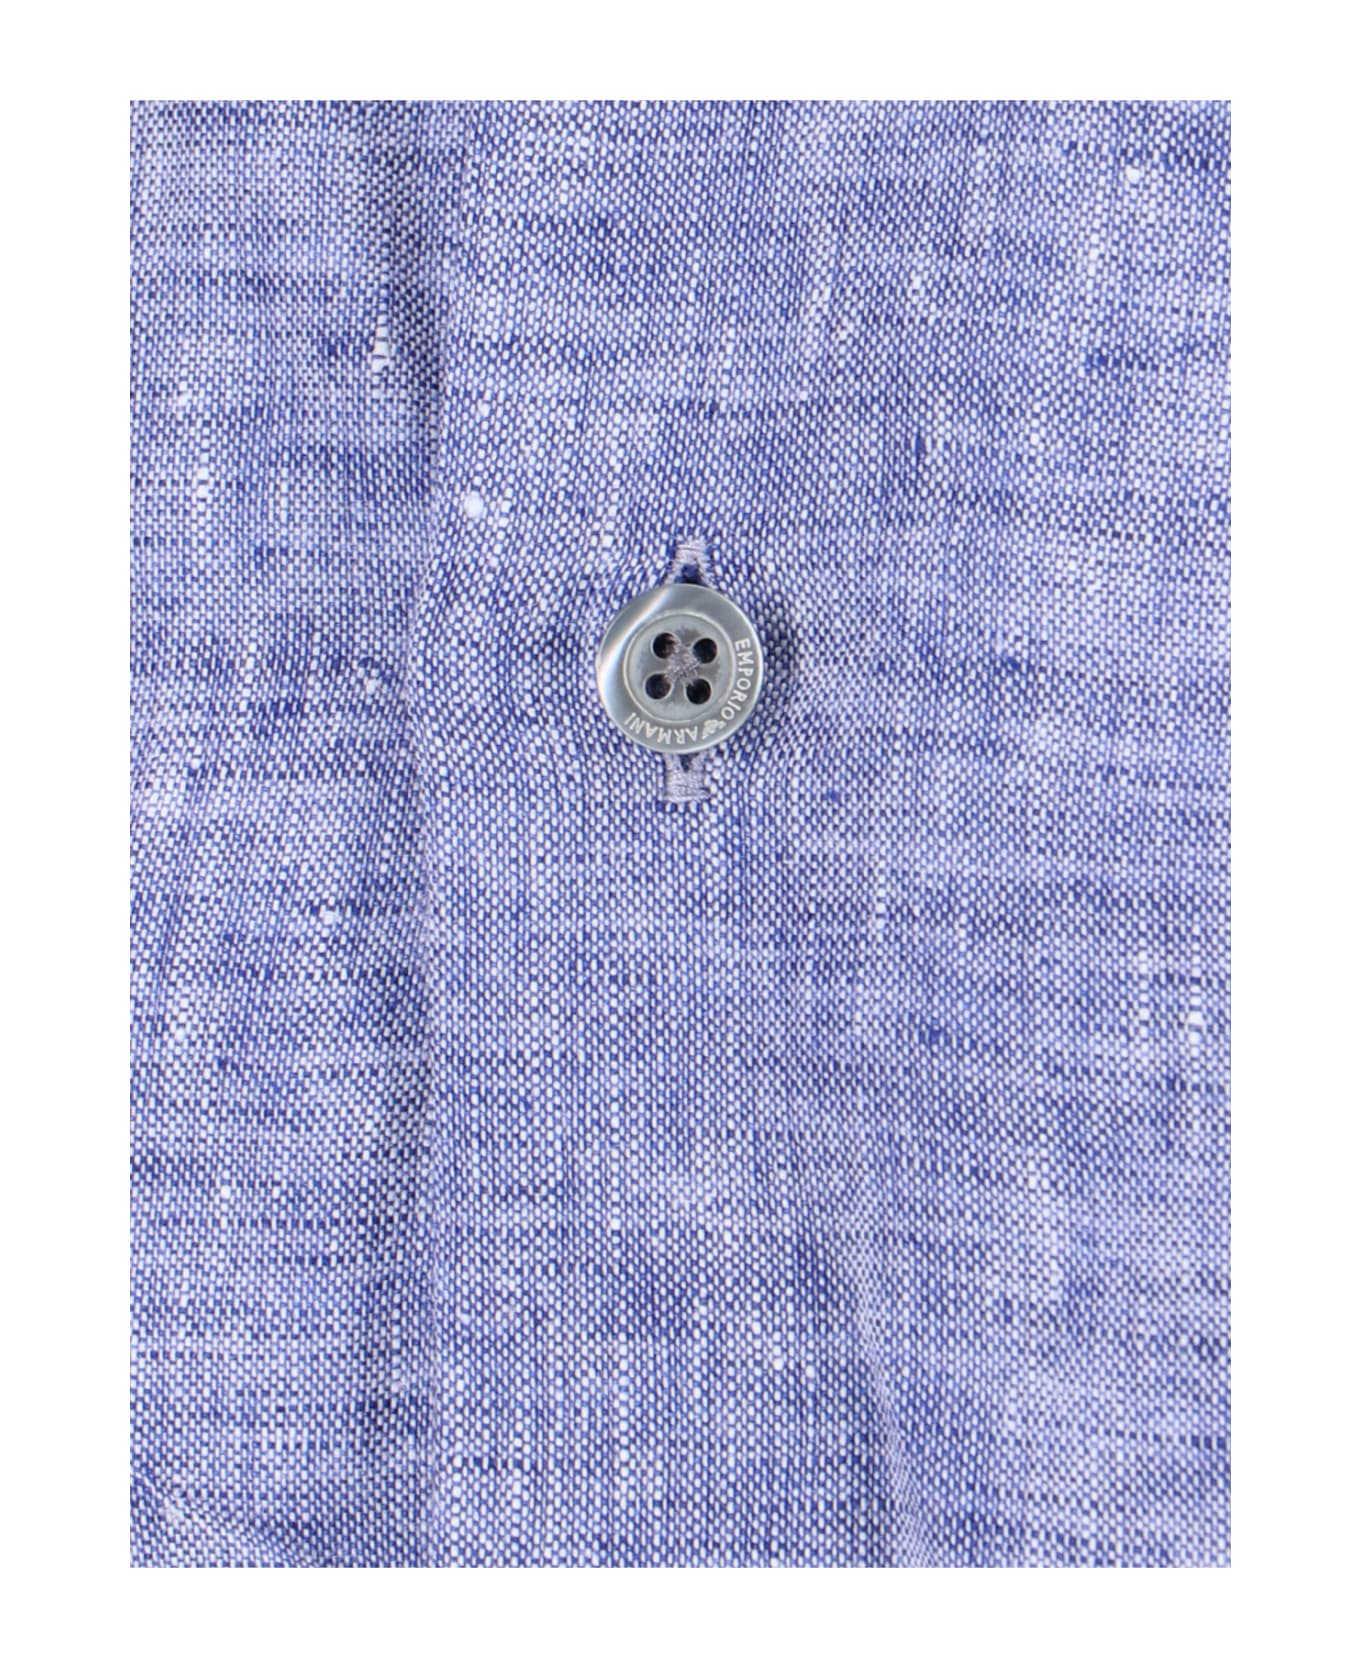 Emporio Armani Classic Shirt - Light Blue